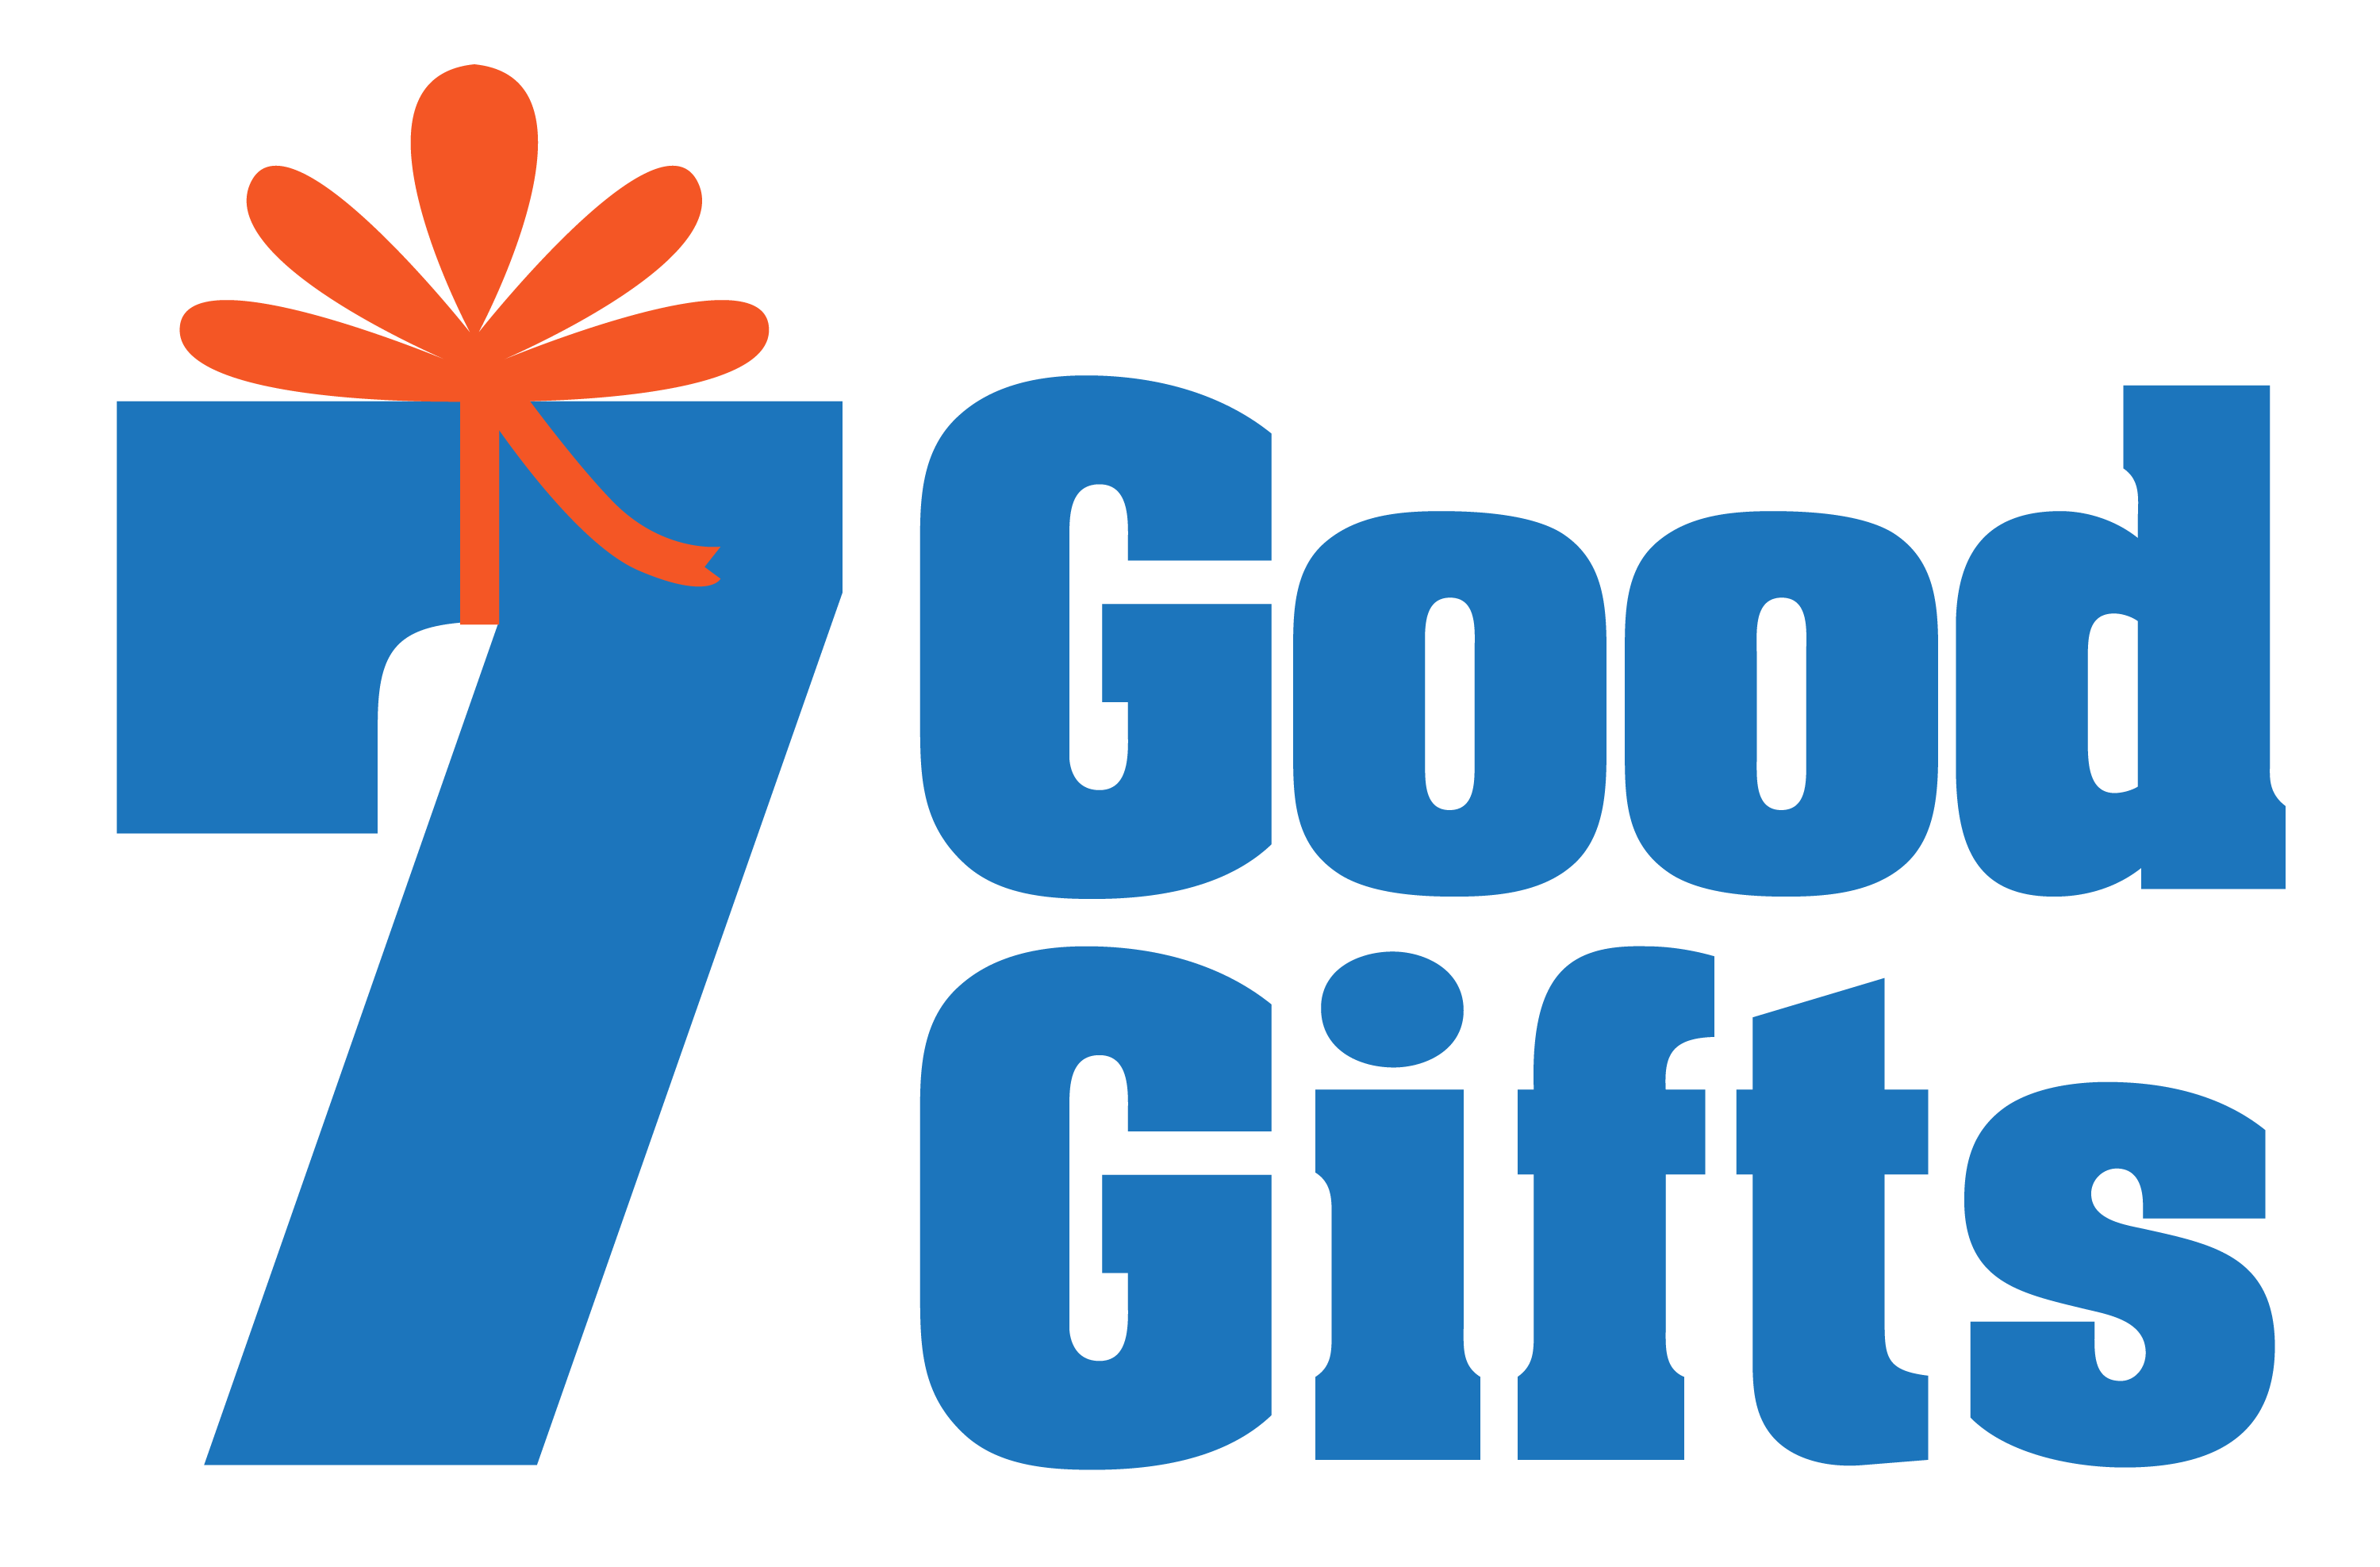 7 good gifts logo